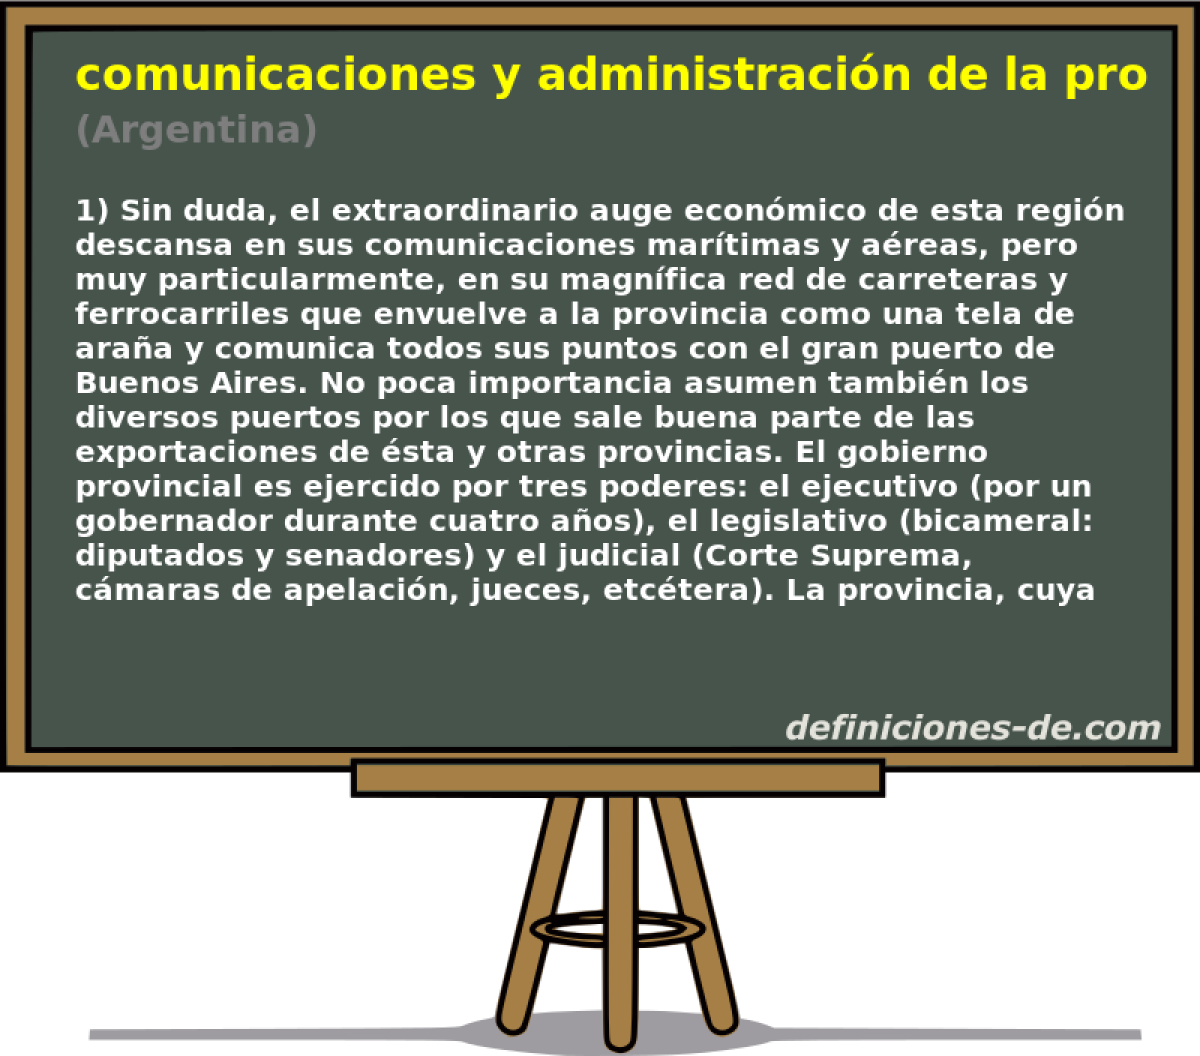 comunicaciones y administracin de la provincia de Buenos Aires (Argentina)